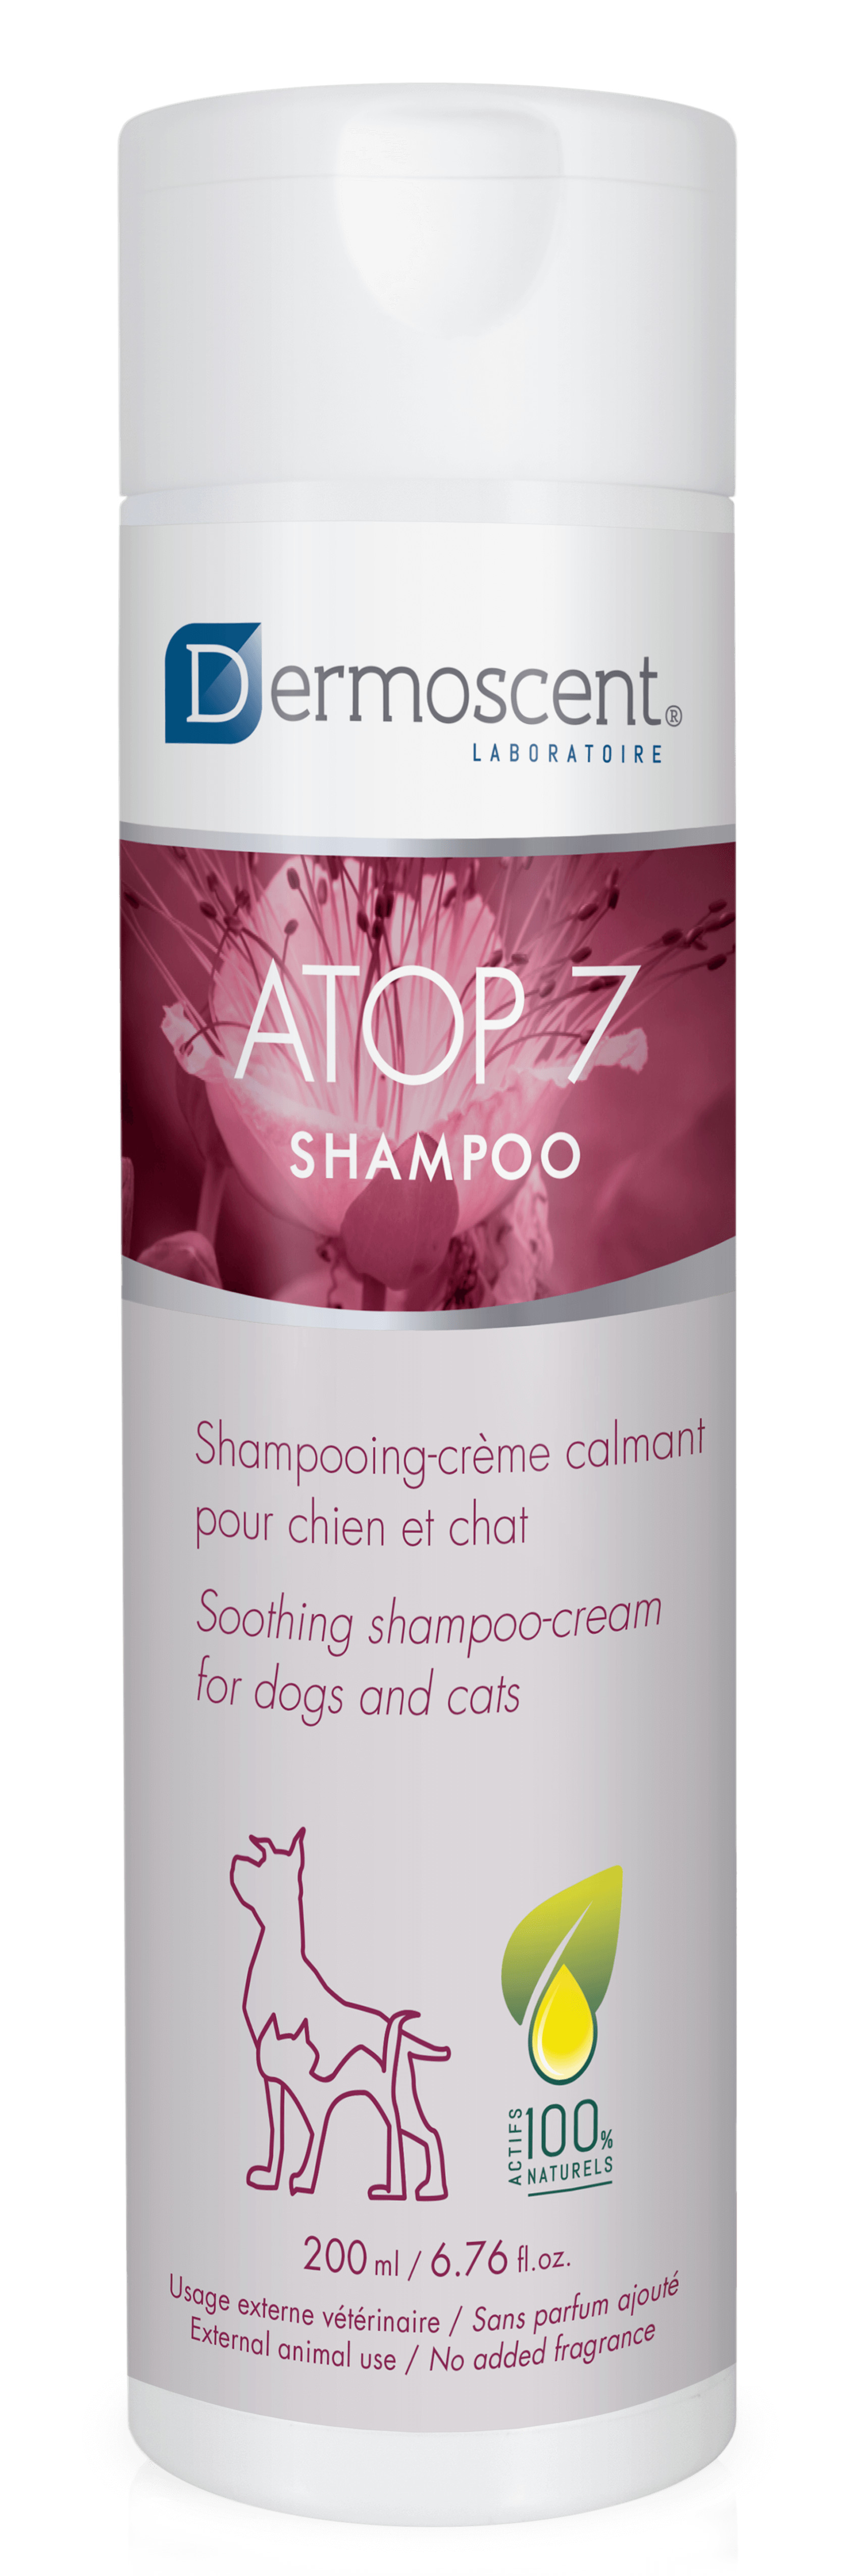 Dermoscent Atop 7 Shampoo voor hond en kat